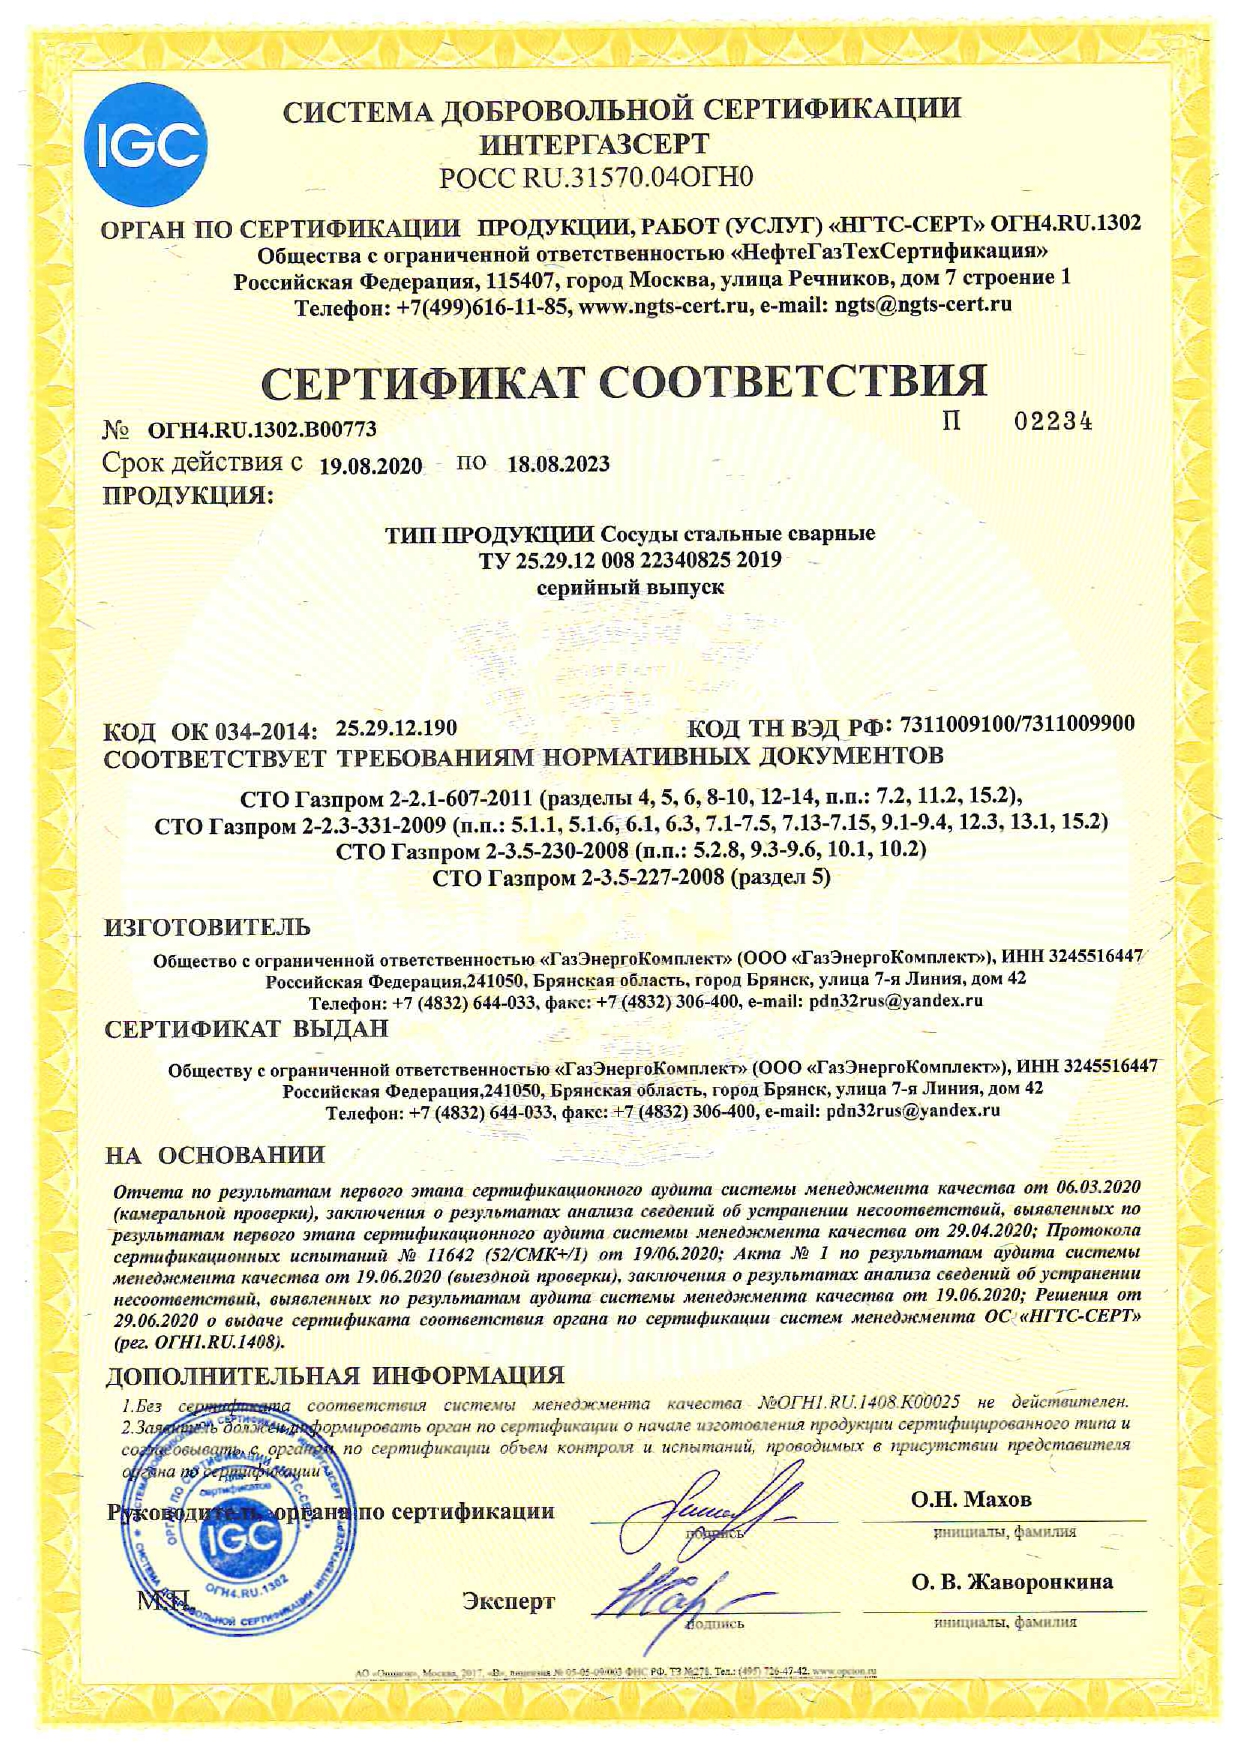 Сертификат соответствия на Сосуды стальные сварные